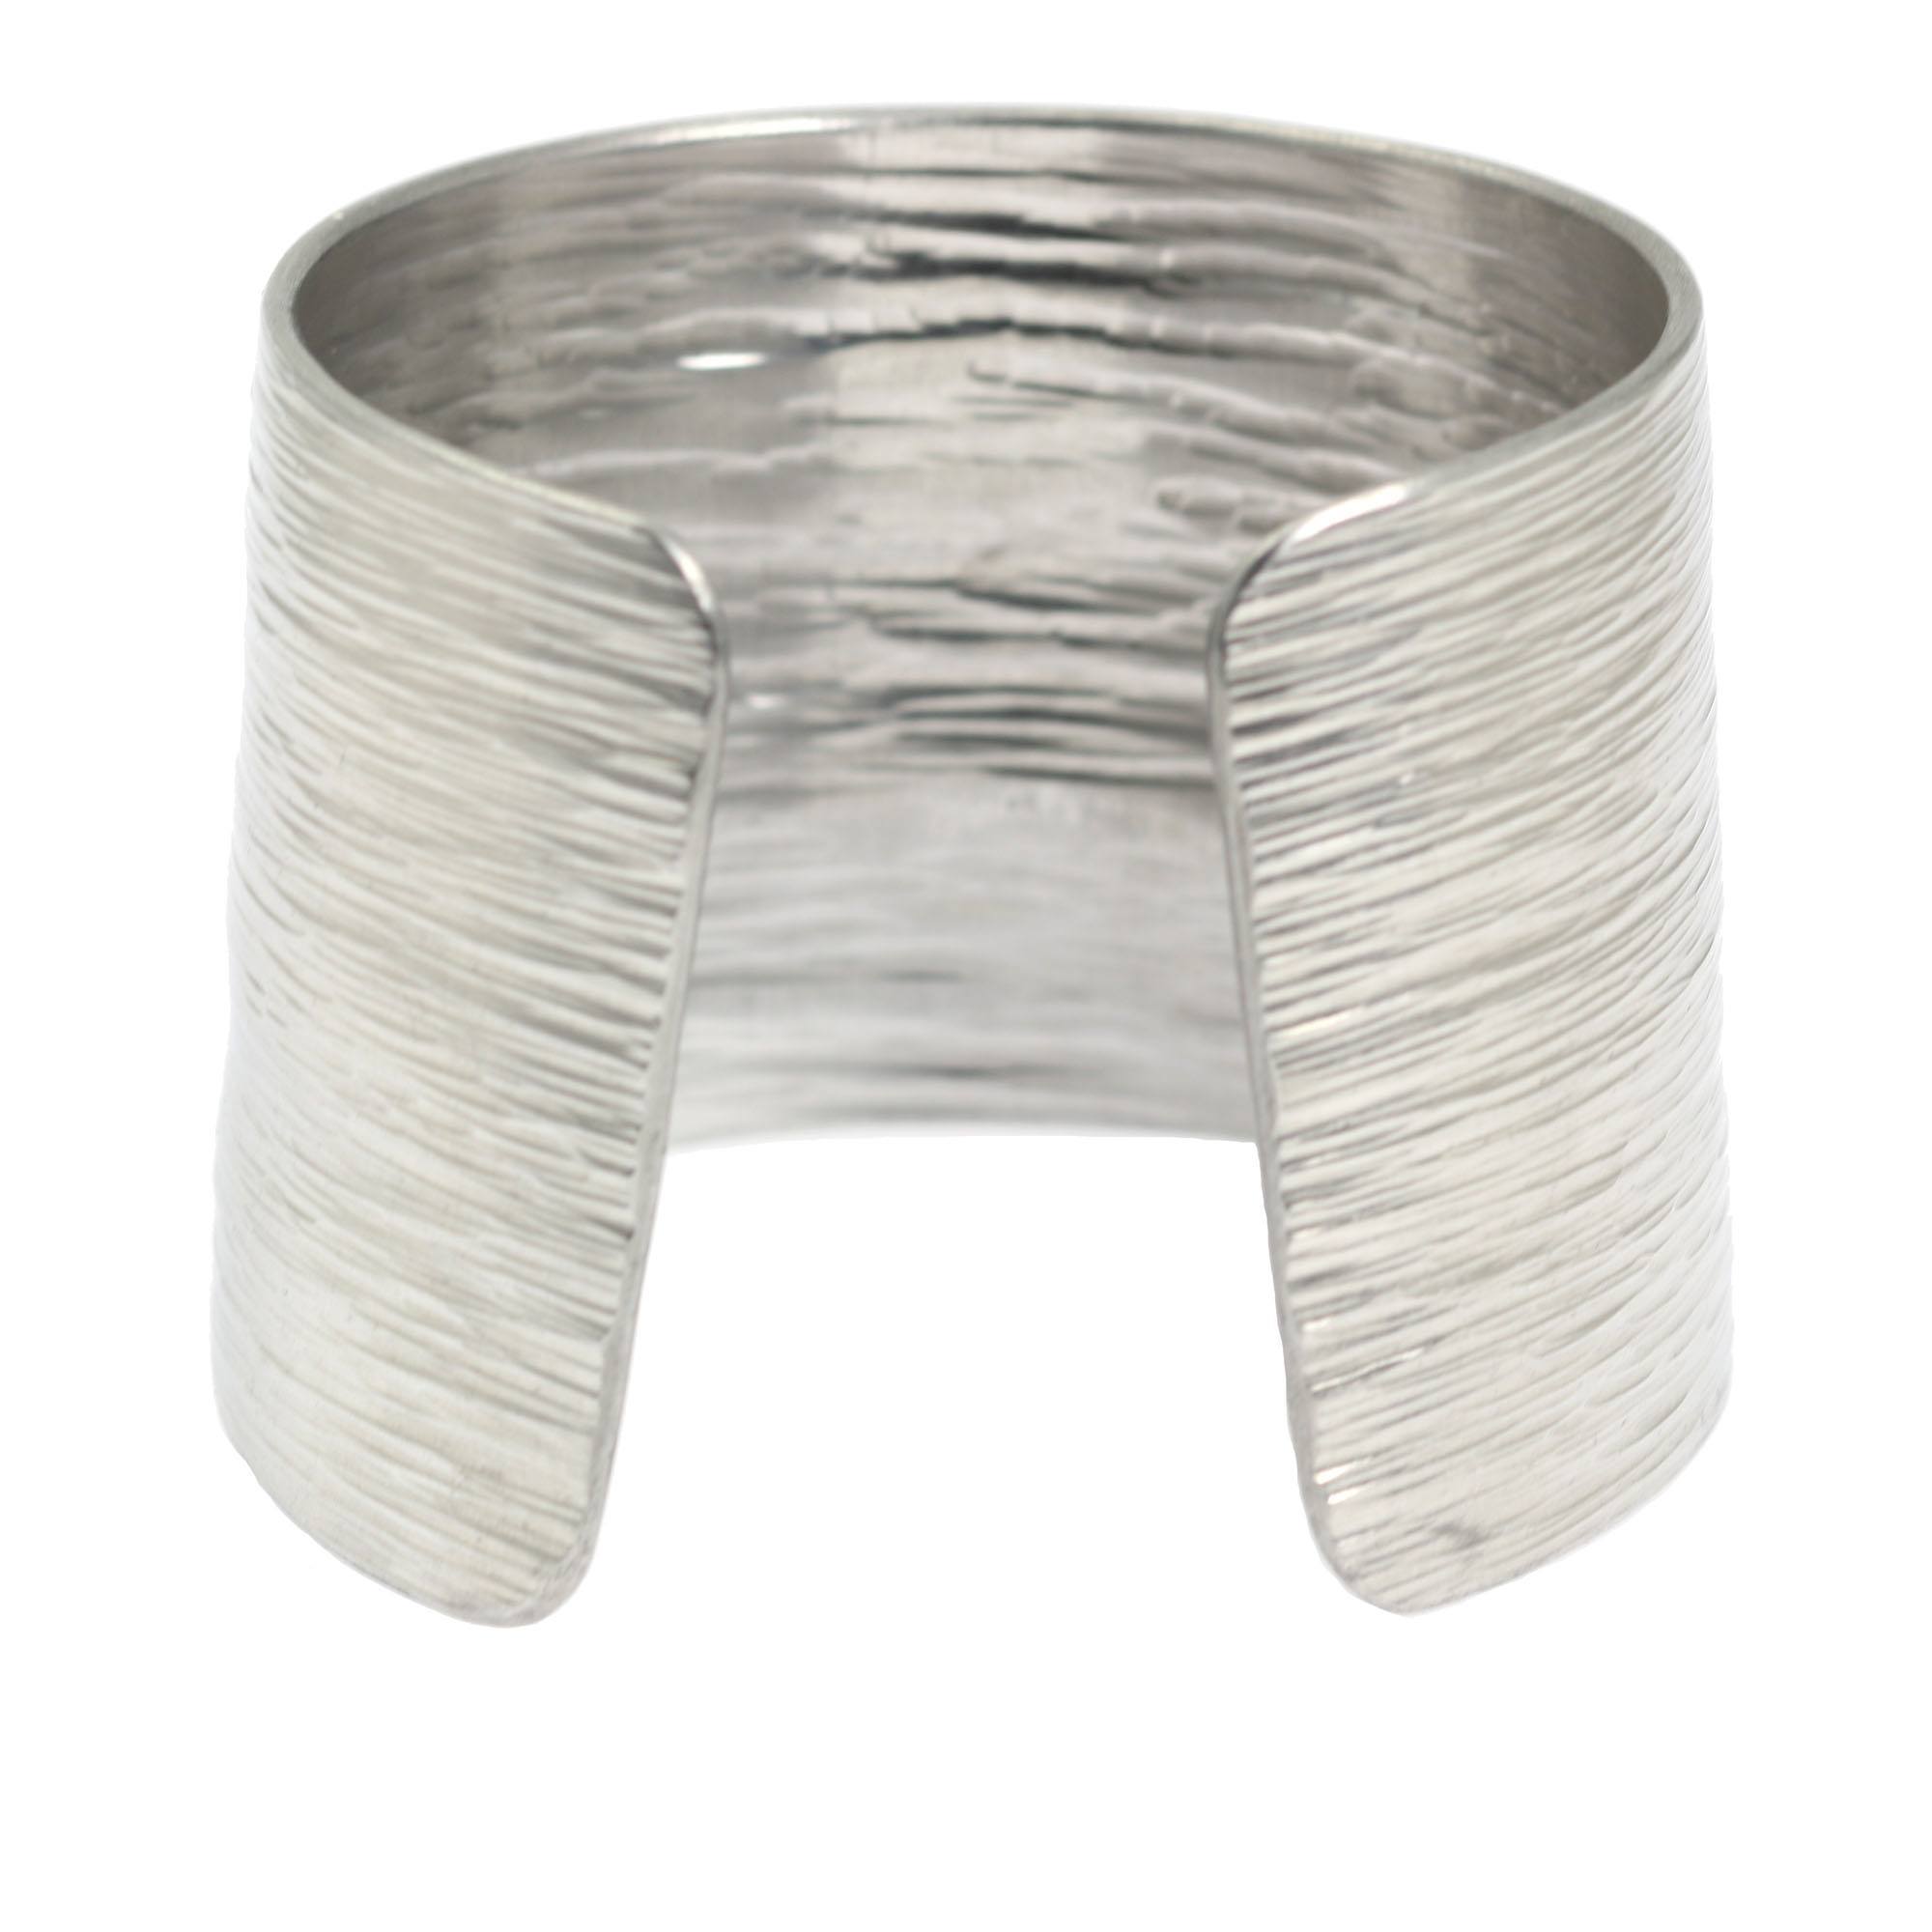 Opening of Aluminum Bark Cuff Wide Silver Tone Cuff Bracelet